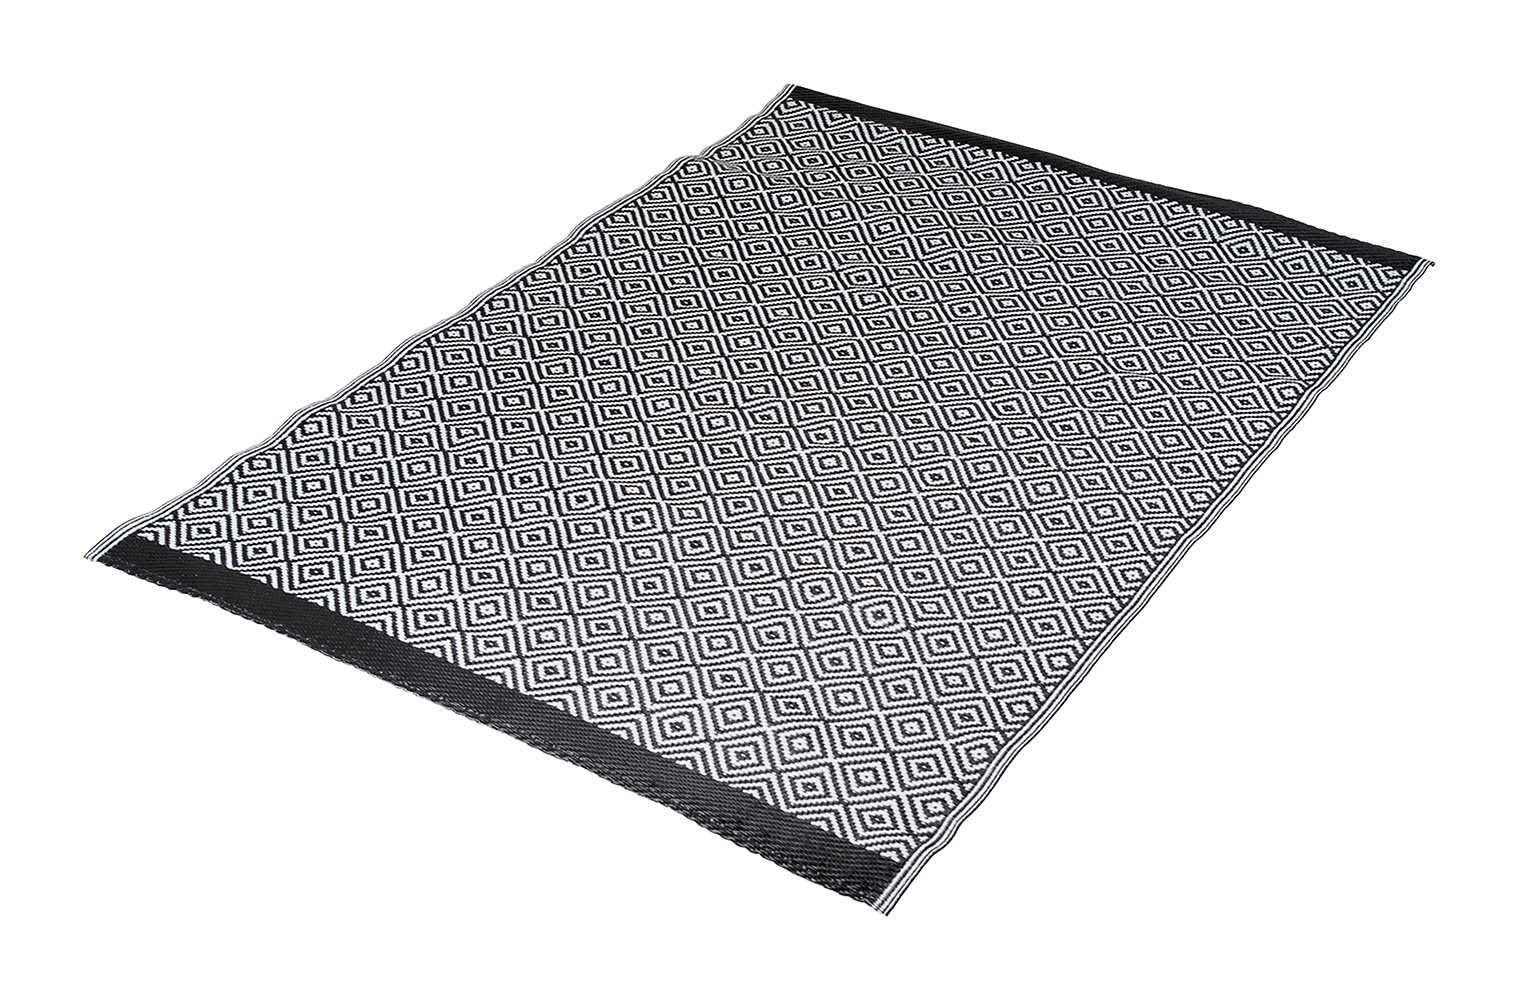 4271010 Una alfombra muy elegante. Decorada por los 2 lados, por lo que se puede utilizar por ambos lados. La alfombra es impermeable y resistente al moho, por lo que es ideal como manta de picnic, en la tienda (de campaña), bajo el porche, en la playa, en el jardín o en el parque. Fabricada con polipropileno 100% de 380 gr/m², ligero y de alta calidad. Esta alfombra tiene una vida útil prolongada gracias al tratamiento UV. Fácil de transportar.